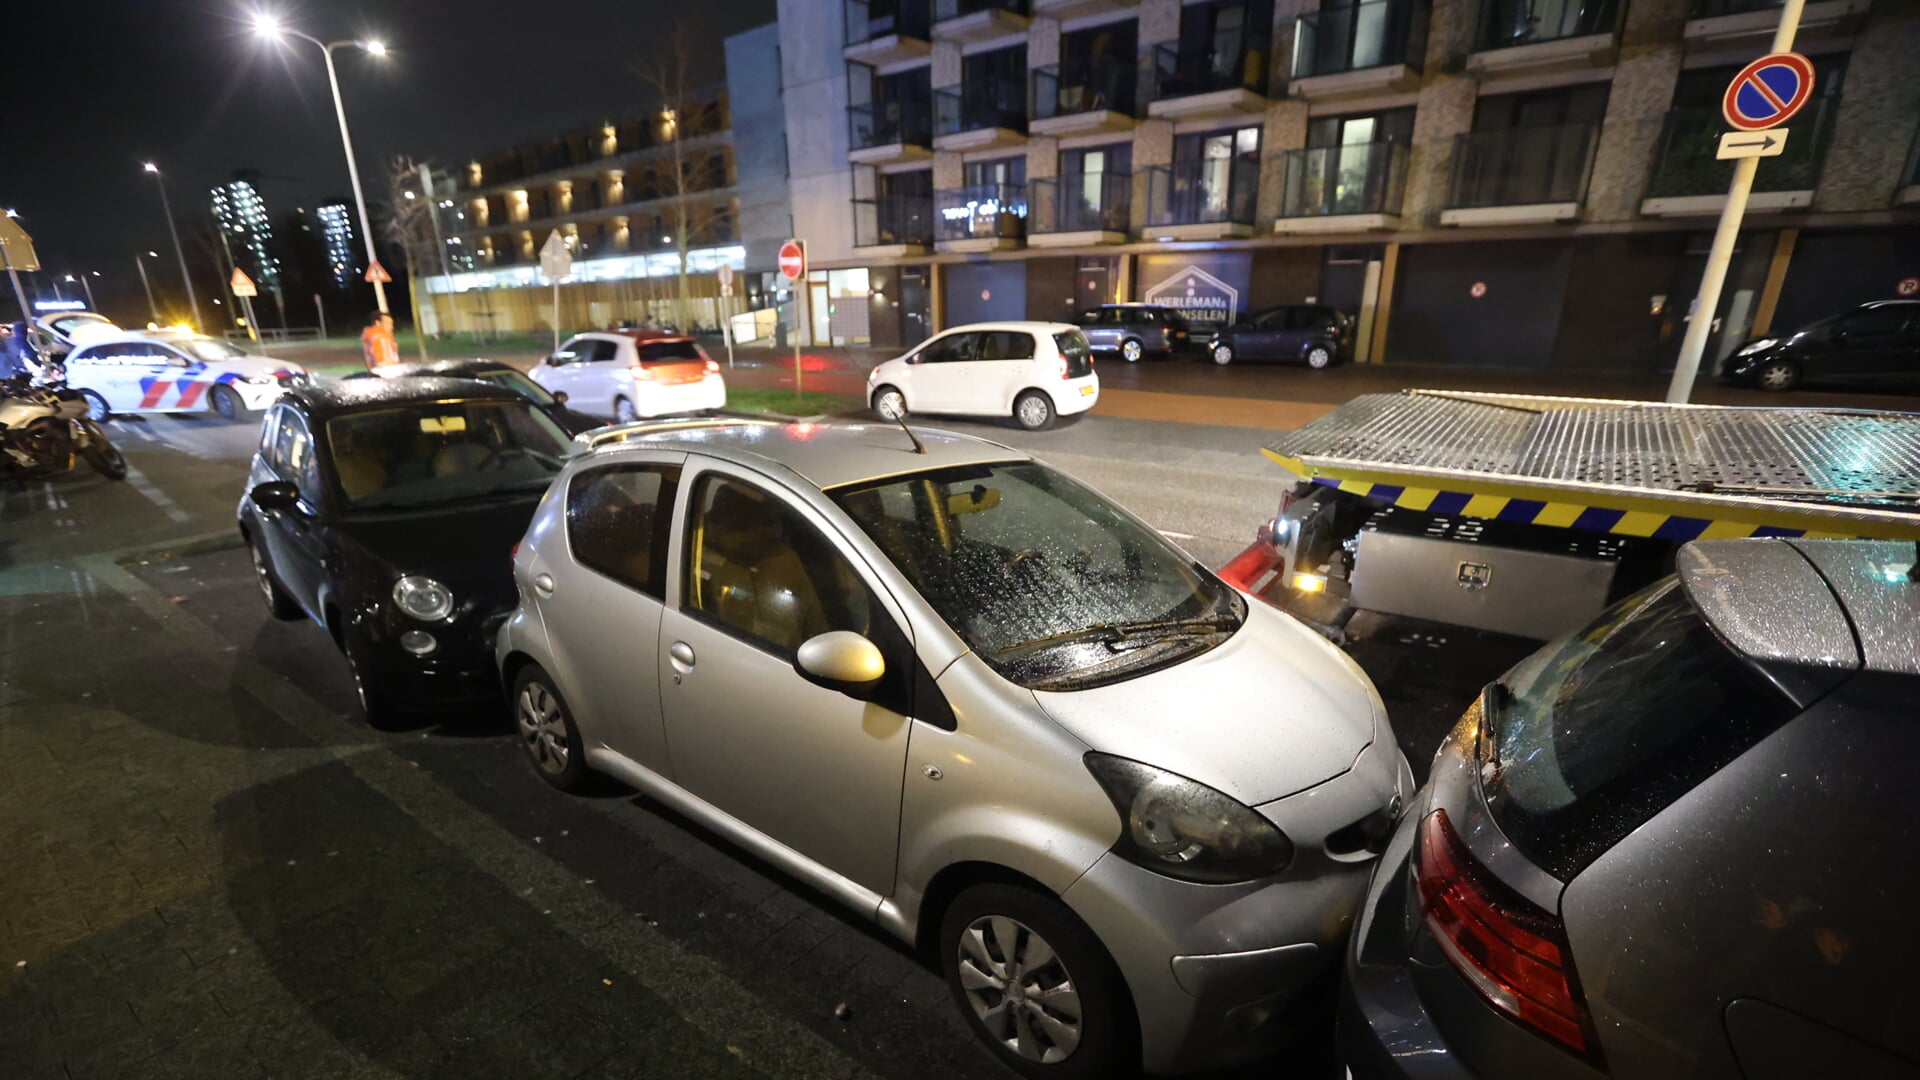 
Automobilist knalt tegen geparkeerde voertuigen